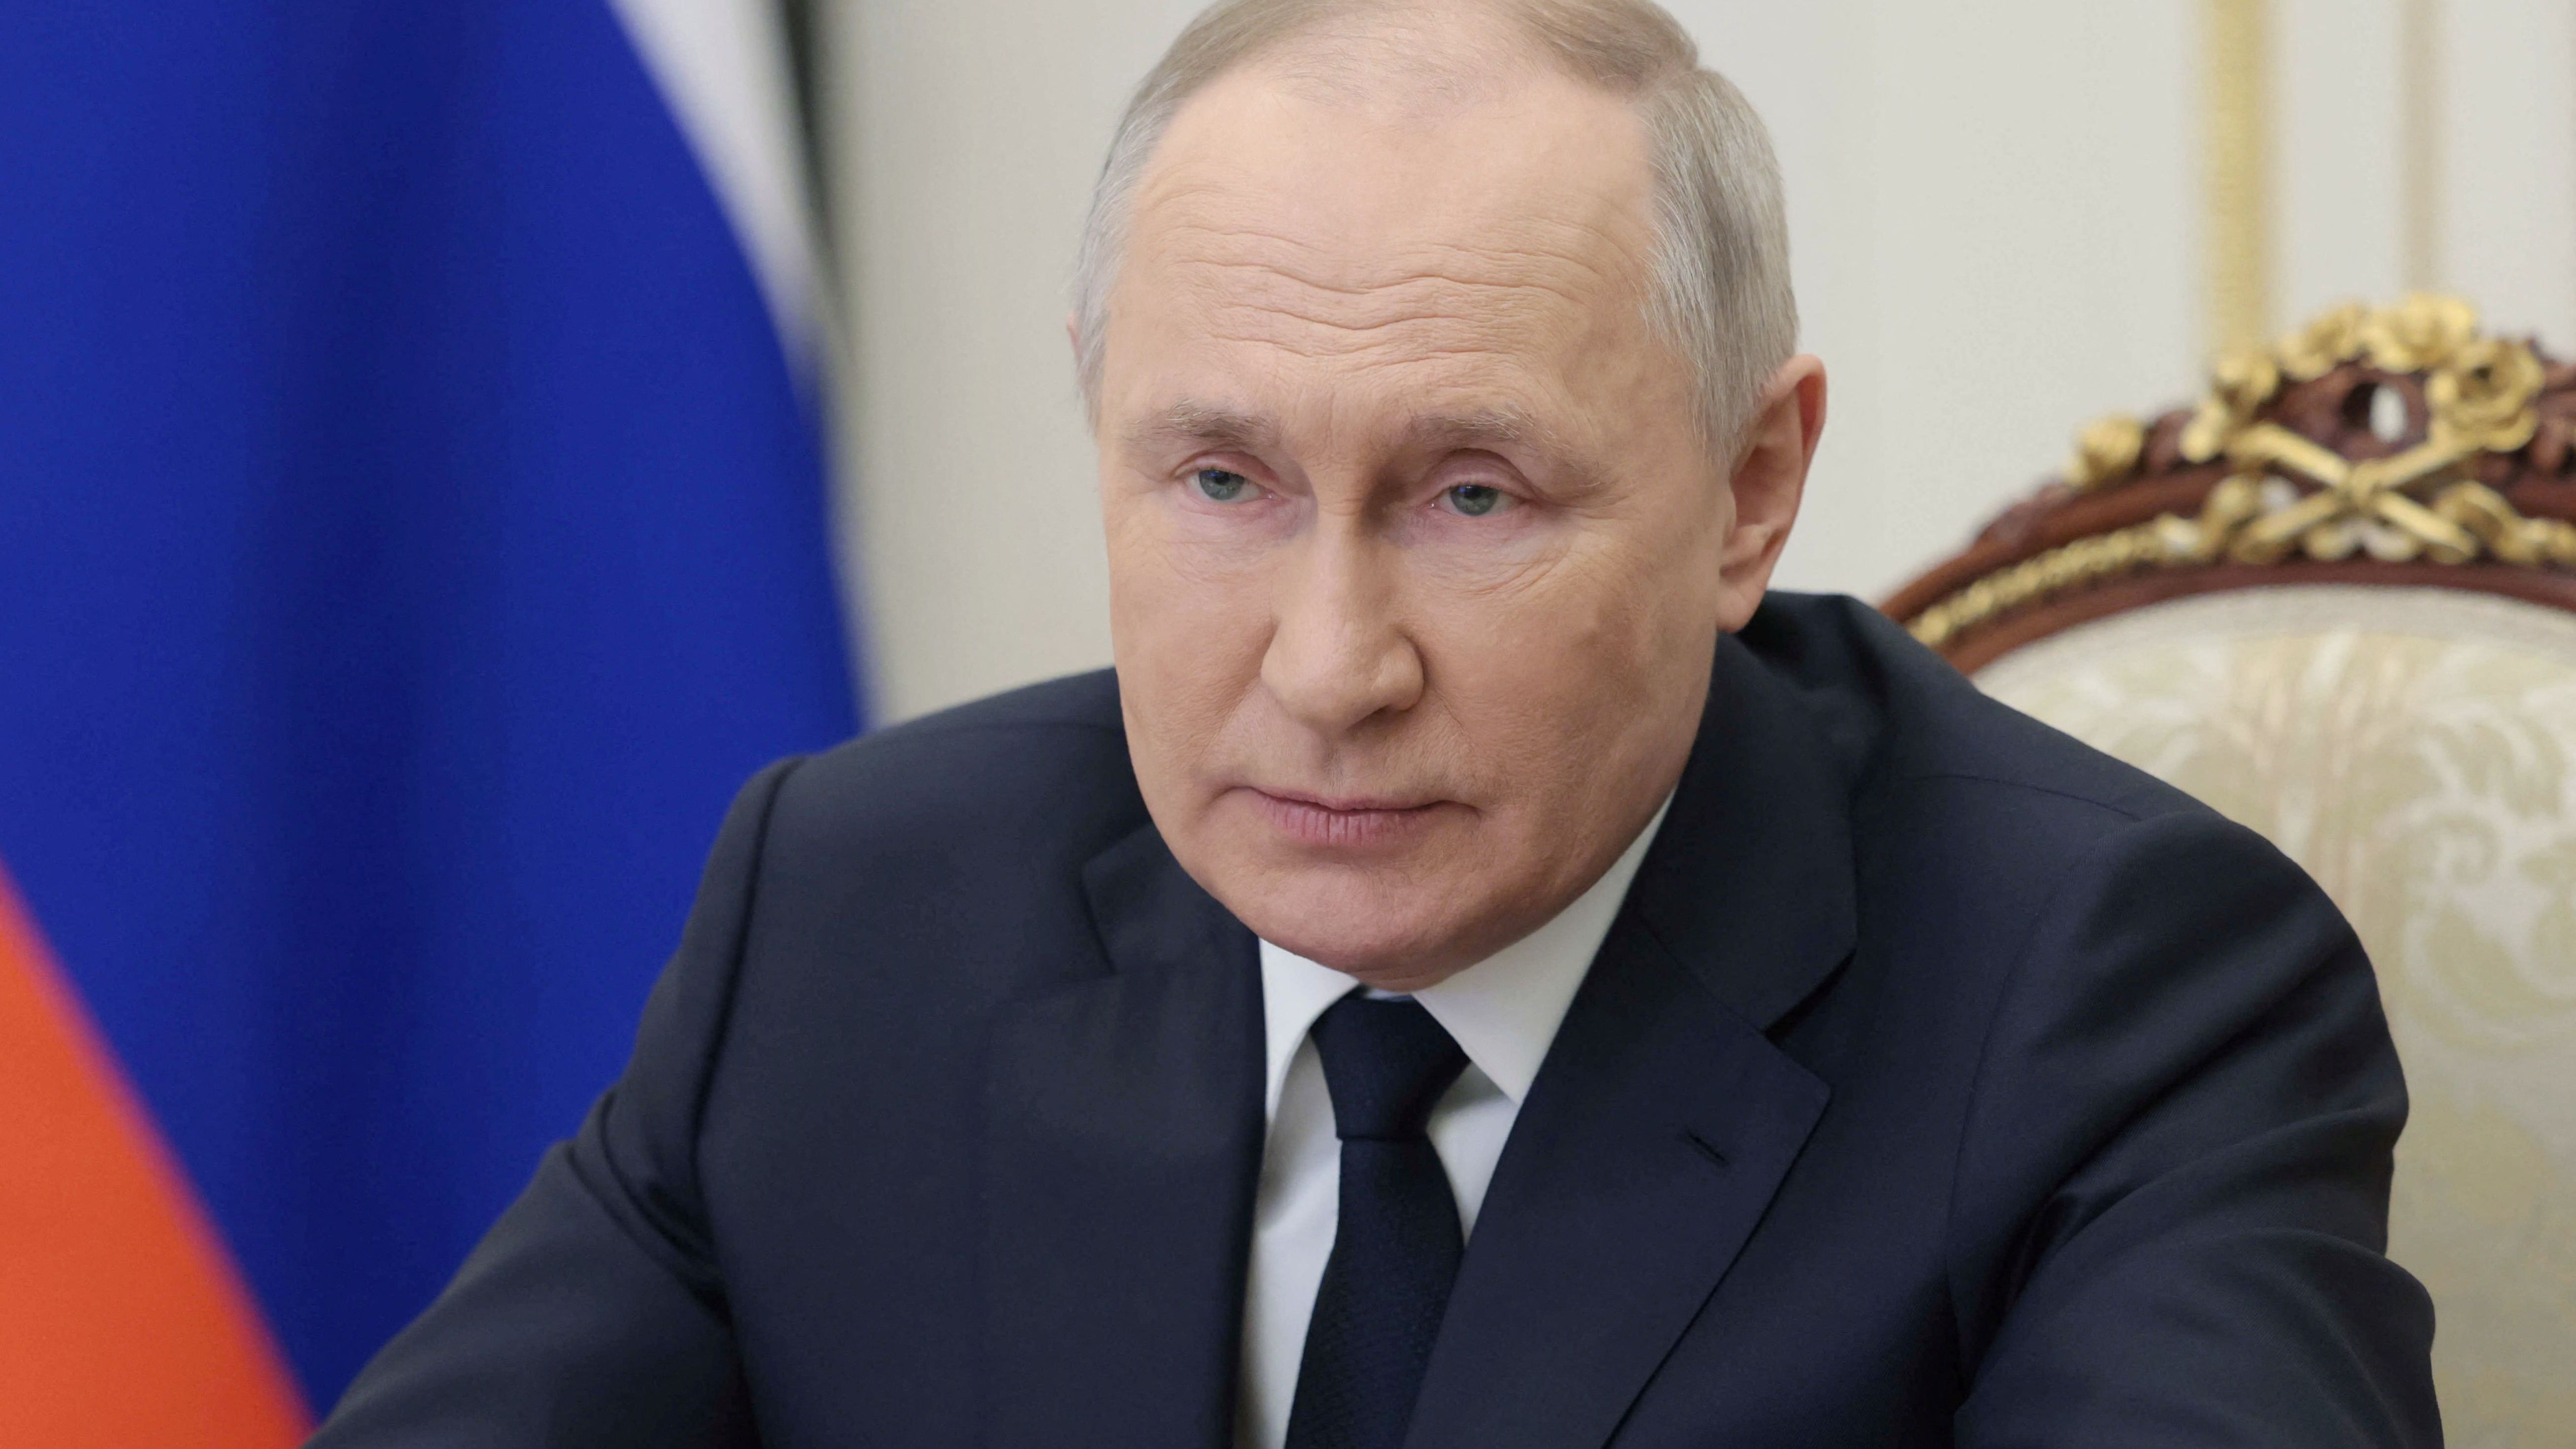 Wladimir Putin ist der amtierende Präsident der Russischen Föderation.

